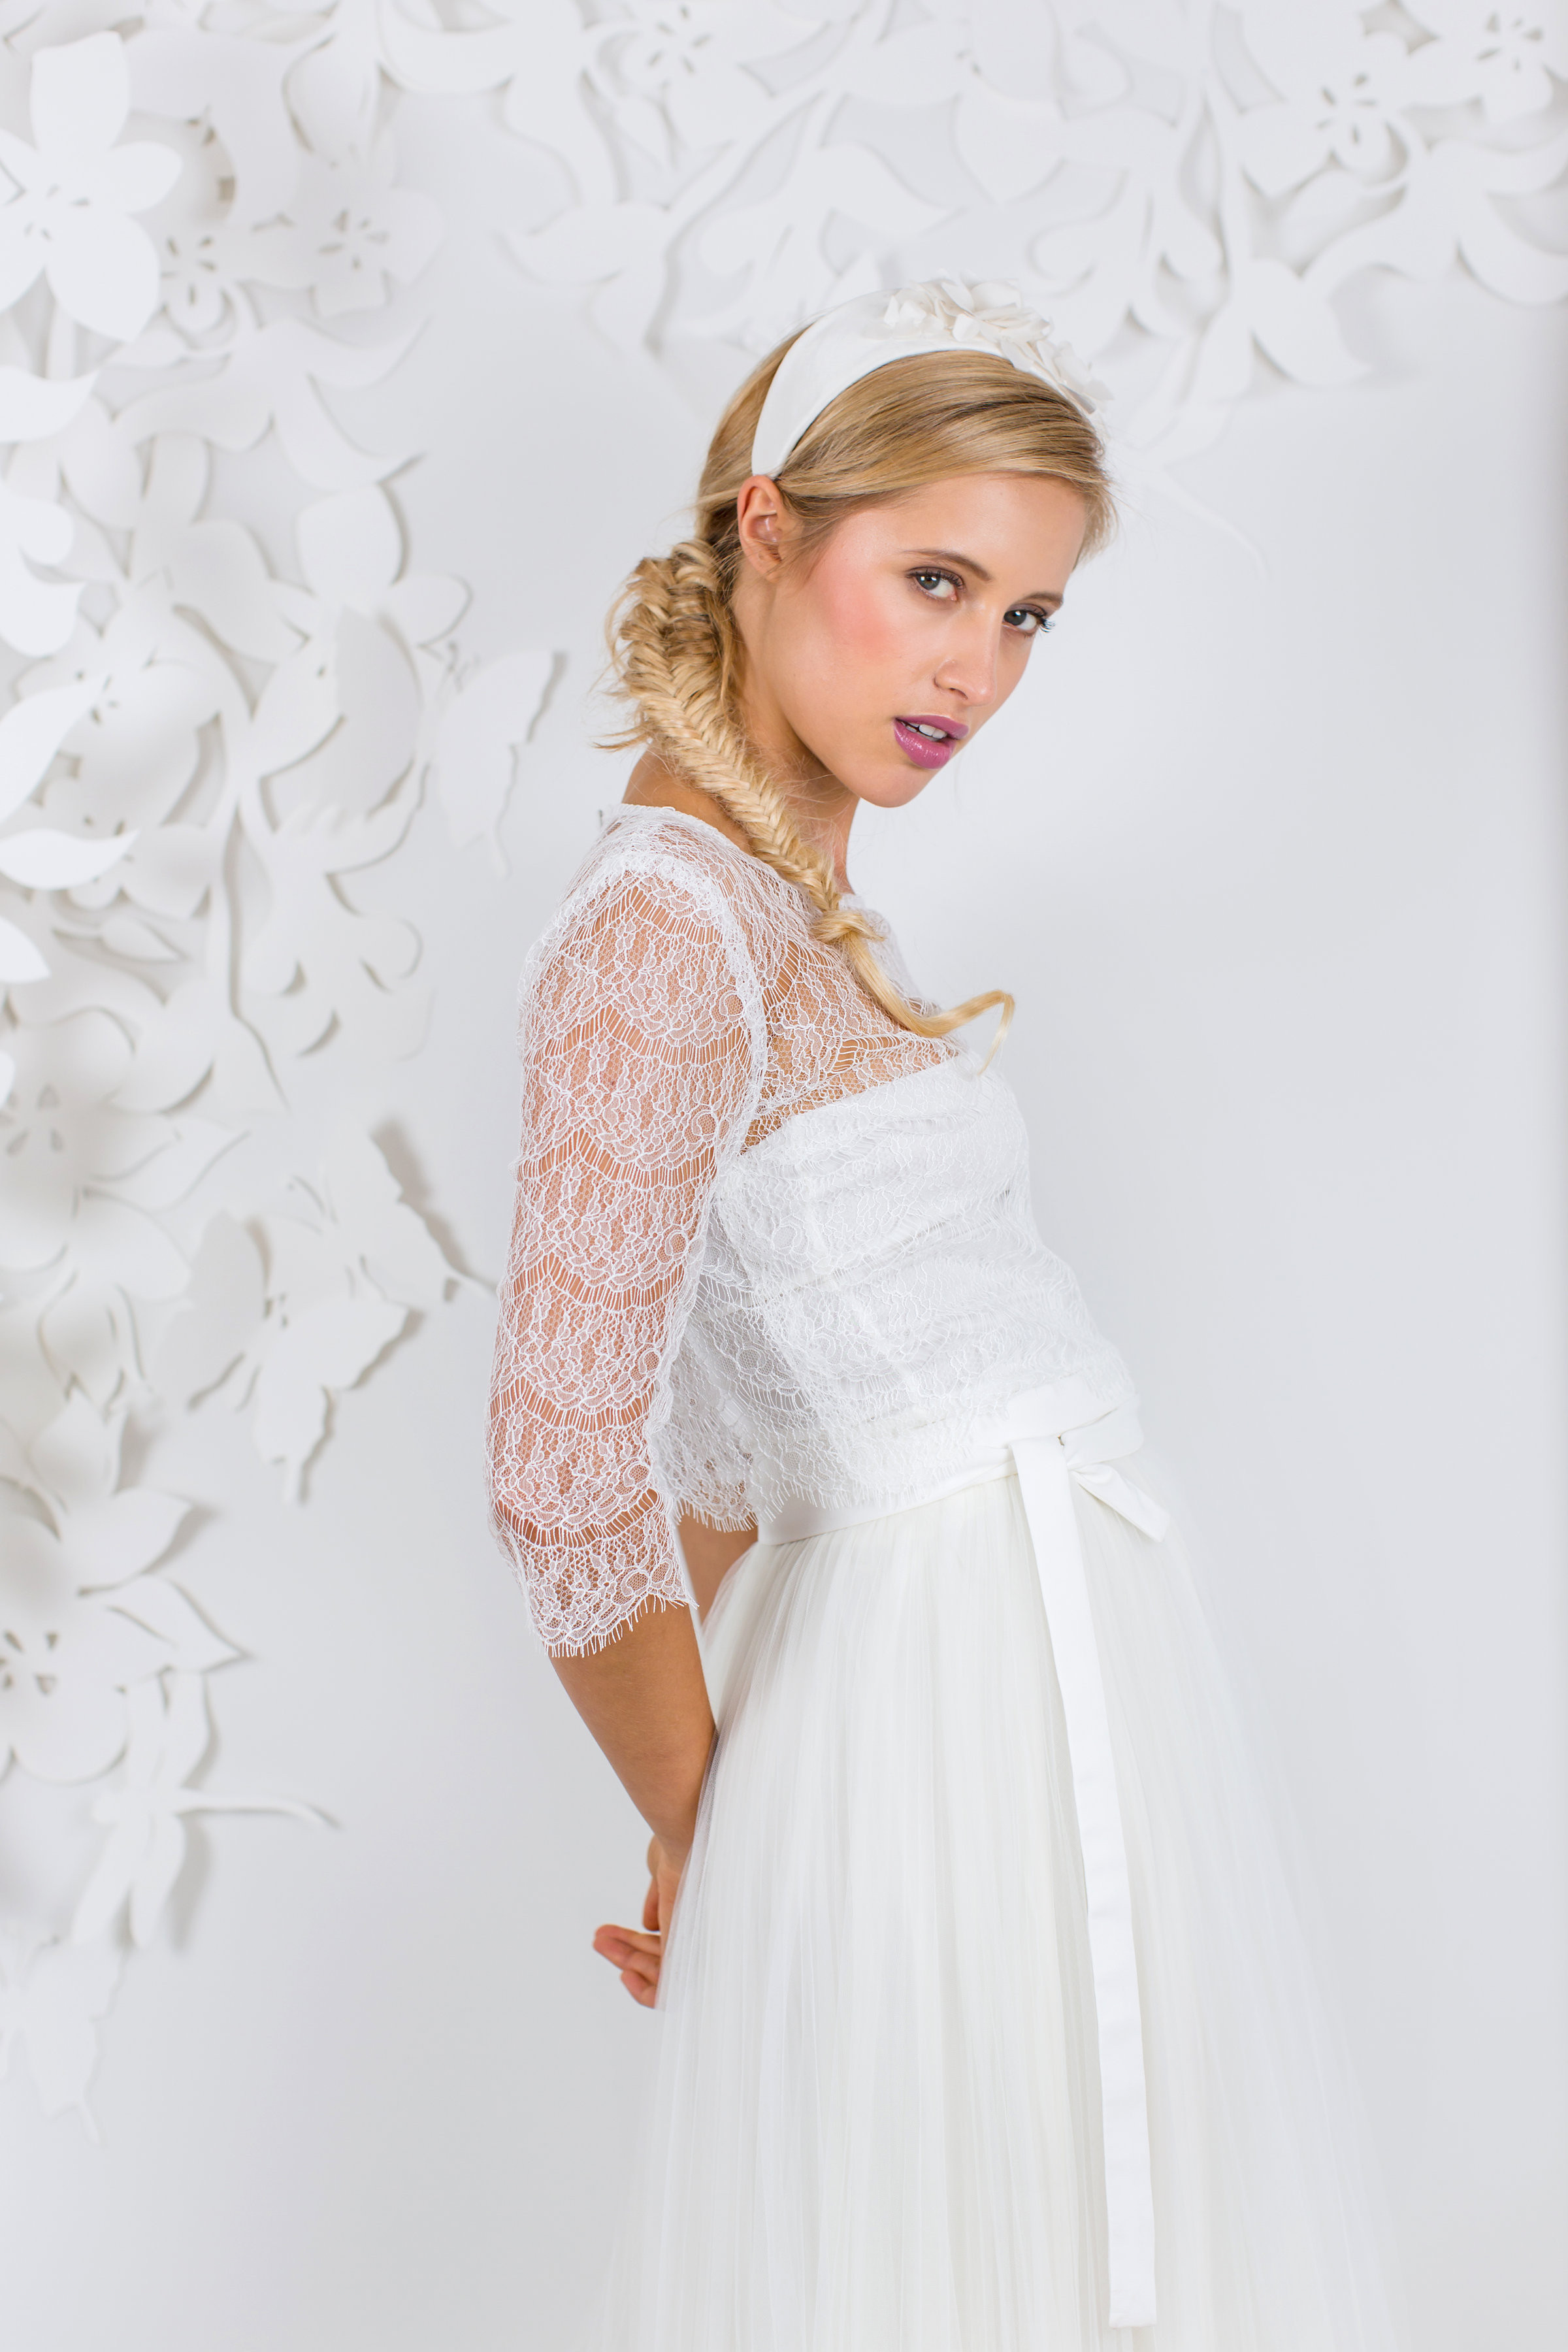 Kleider Für Standesamtliche Hochzeit
 Brautkleid Standesamt Die schönsten Kleider für